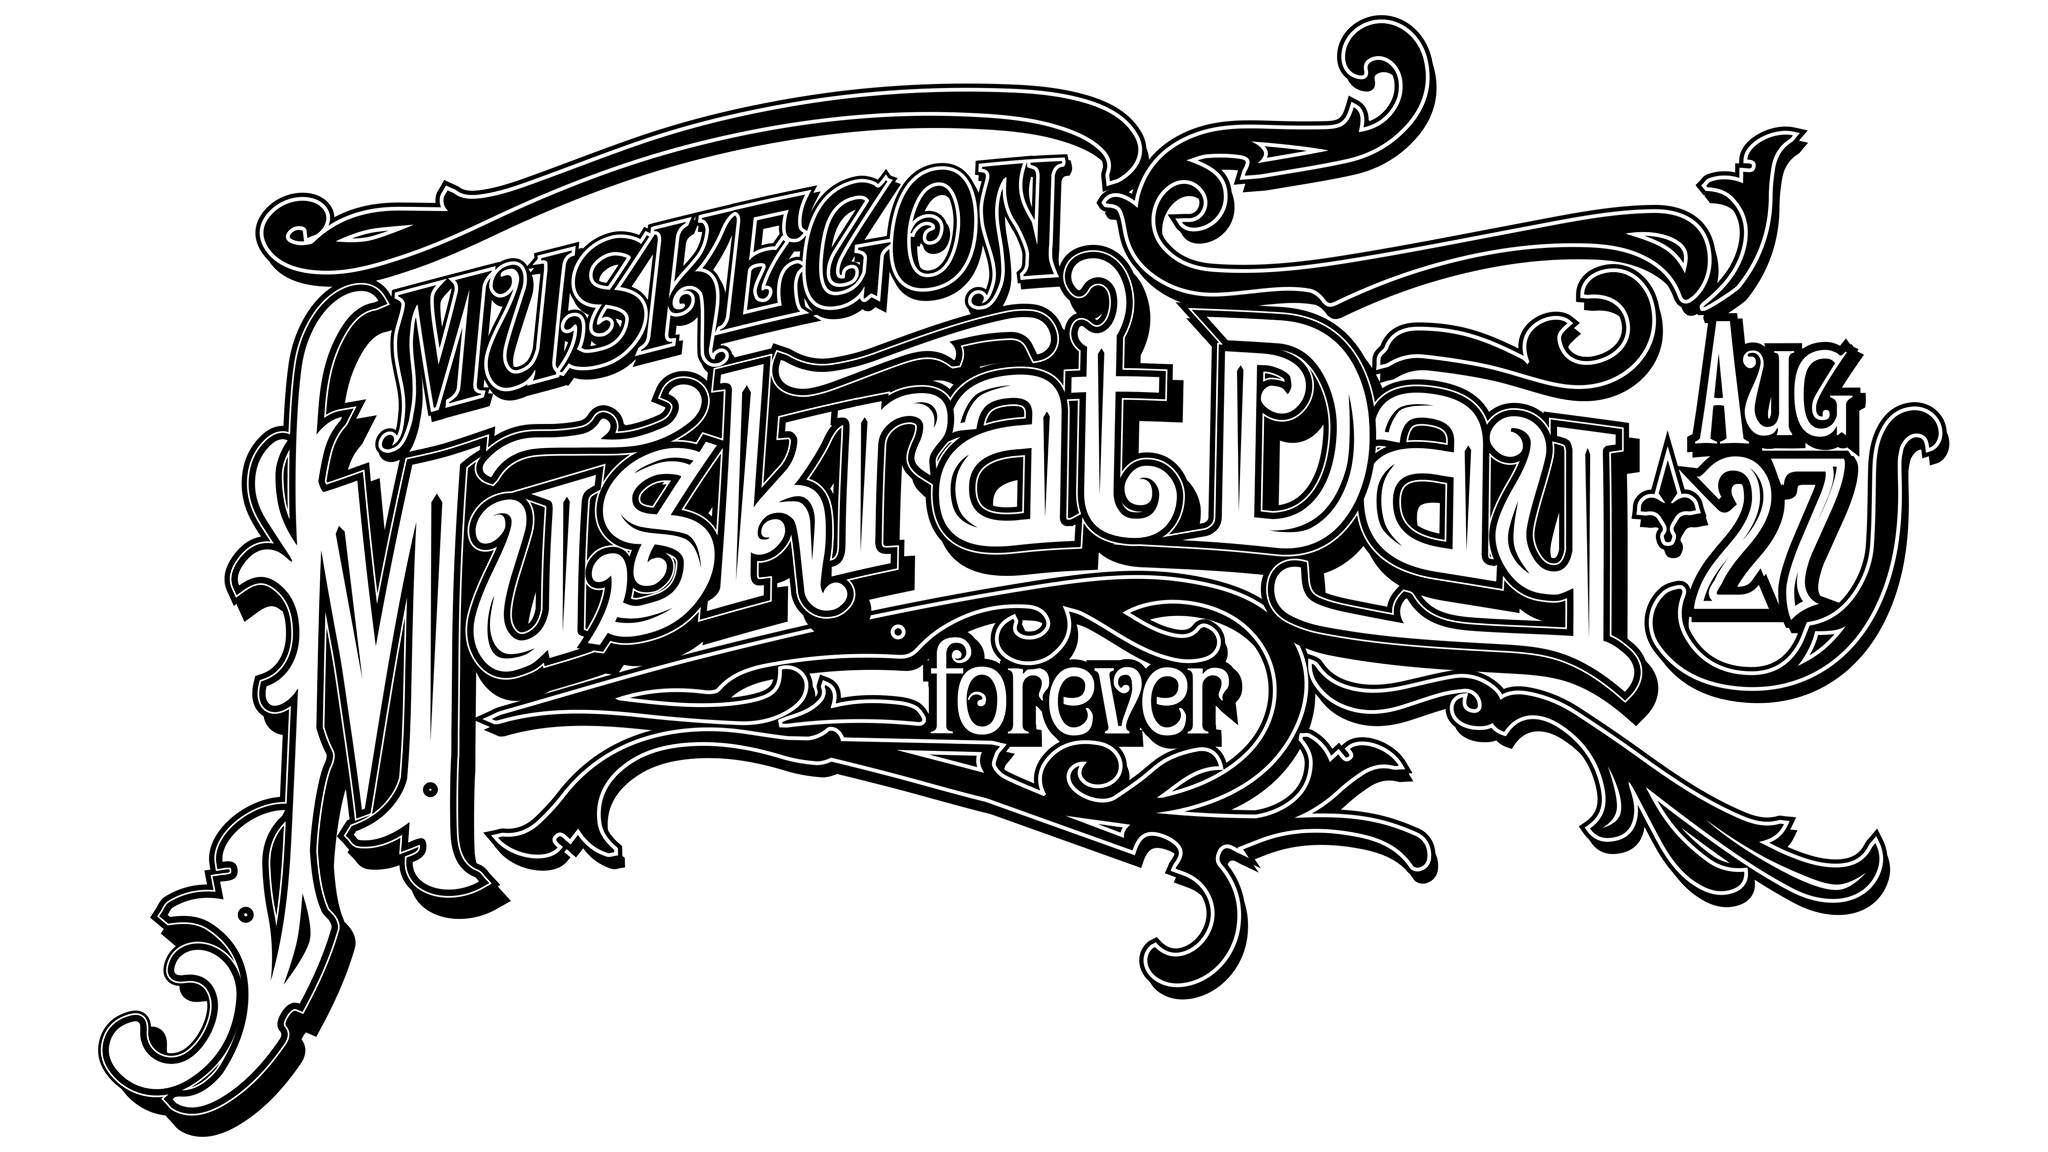 Muskrat Logo - Muskegon, meet Muskrat Frank. This omniscient rodent is bringing a